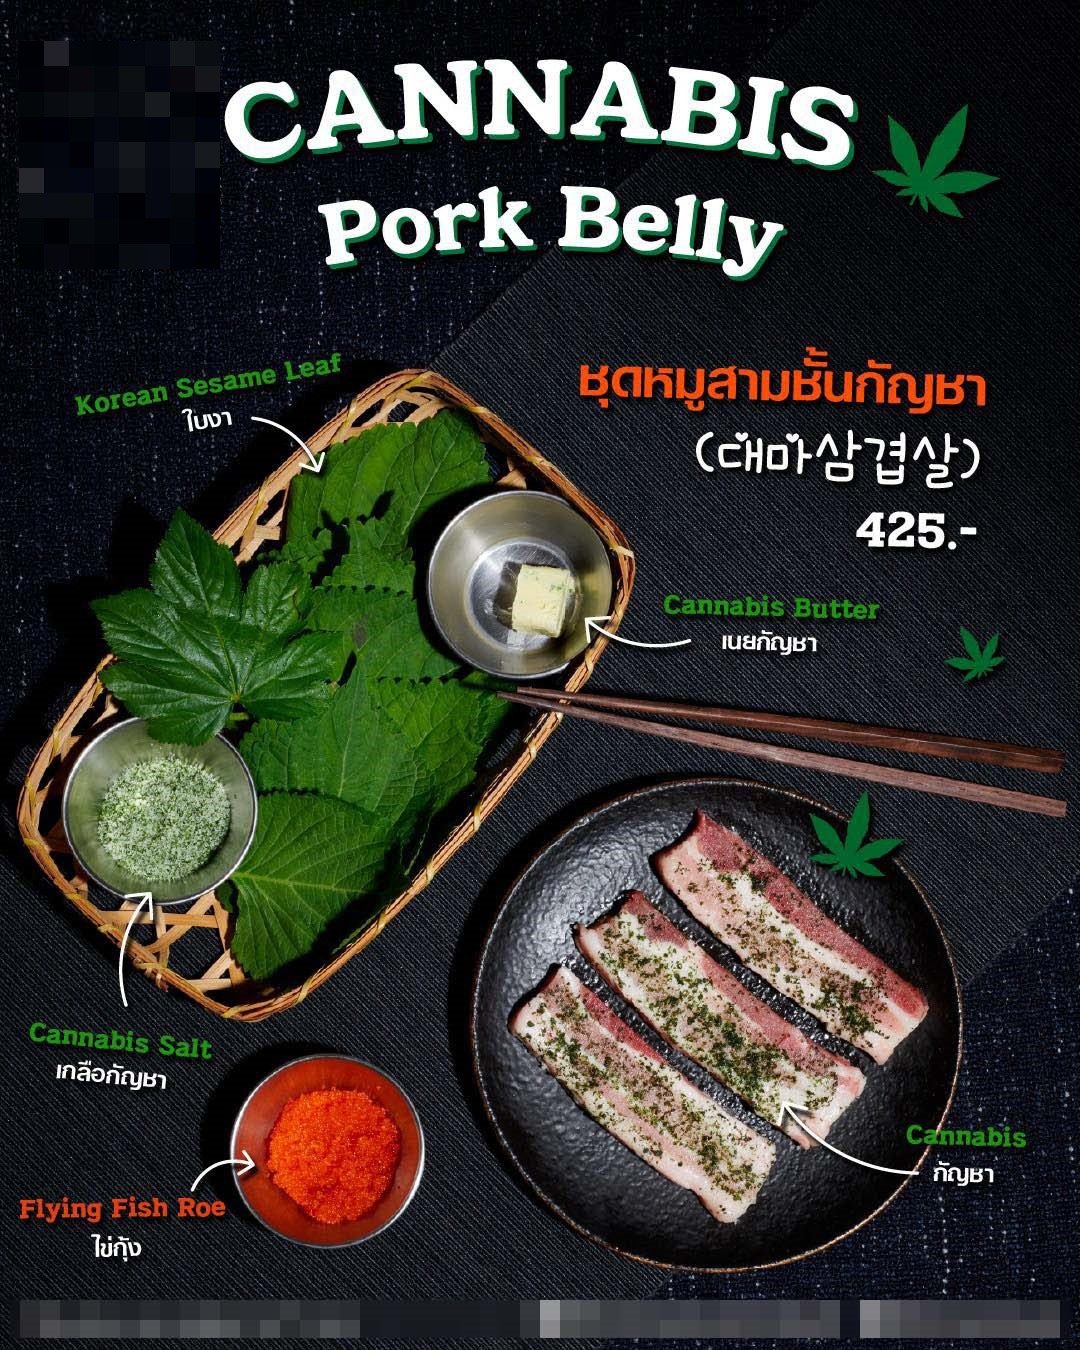 태국에서 대마초를 재료로 한 현지 음식 광고(국정원 제공)